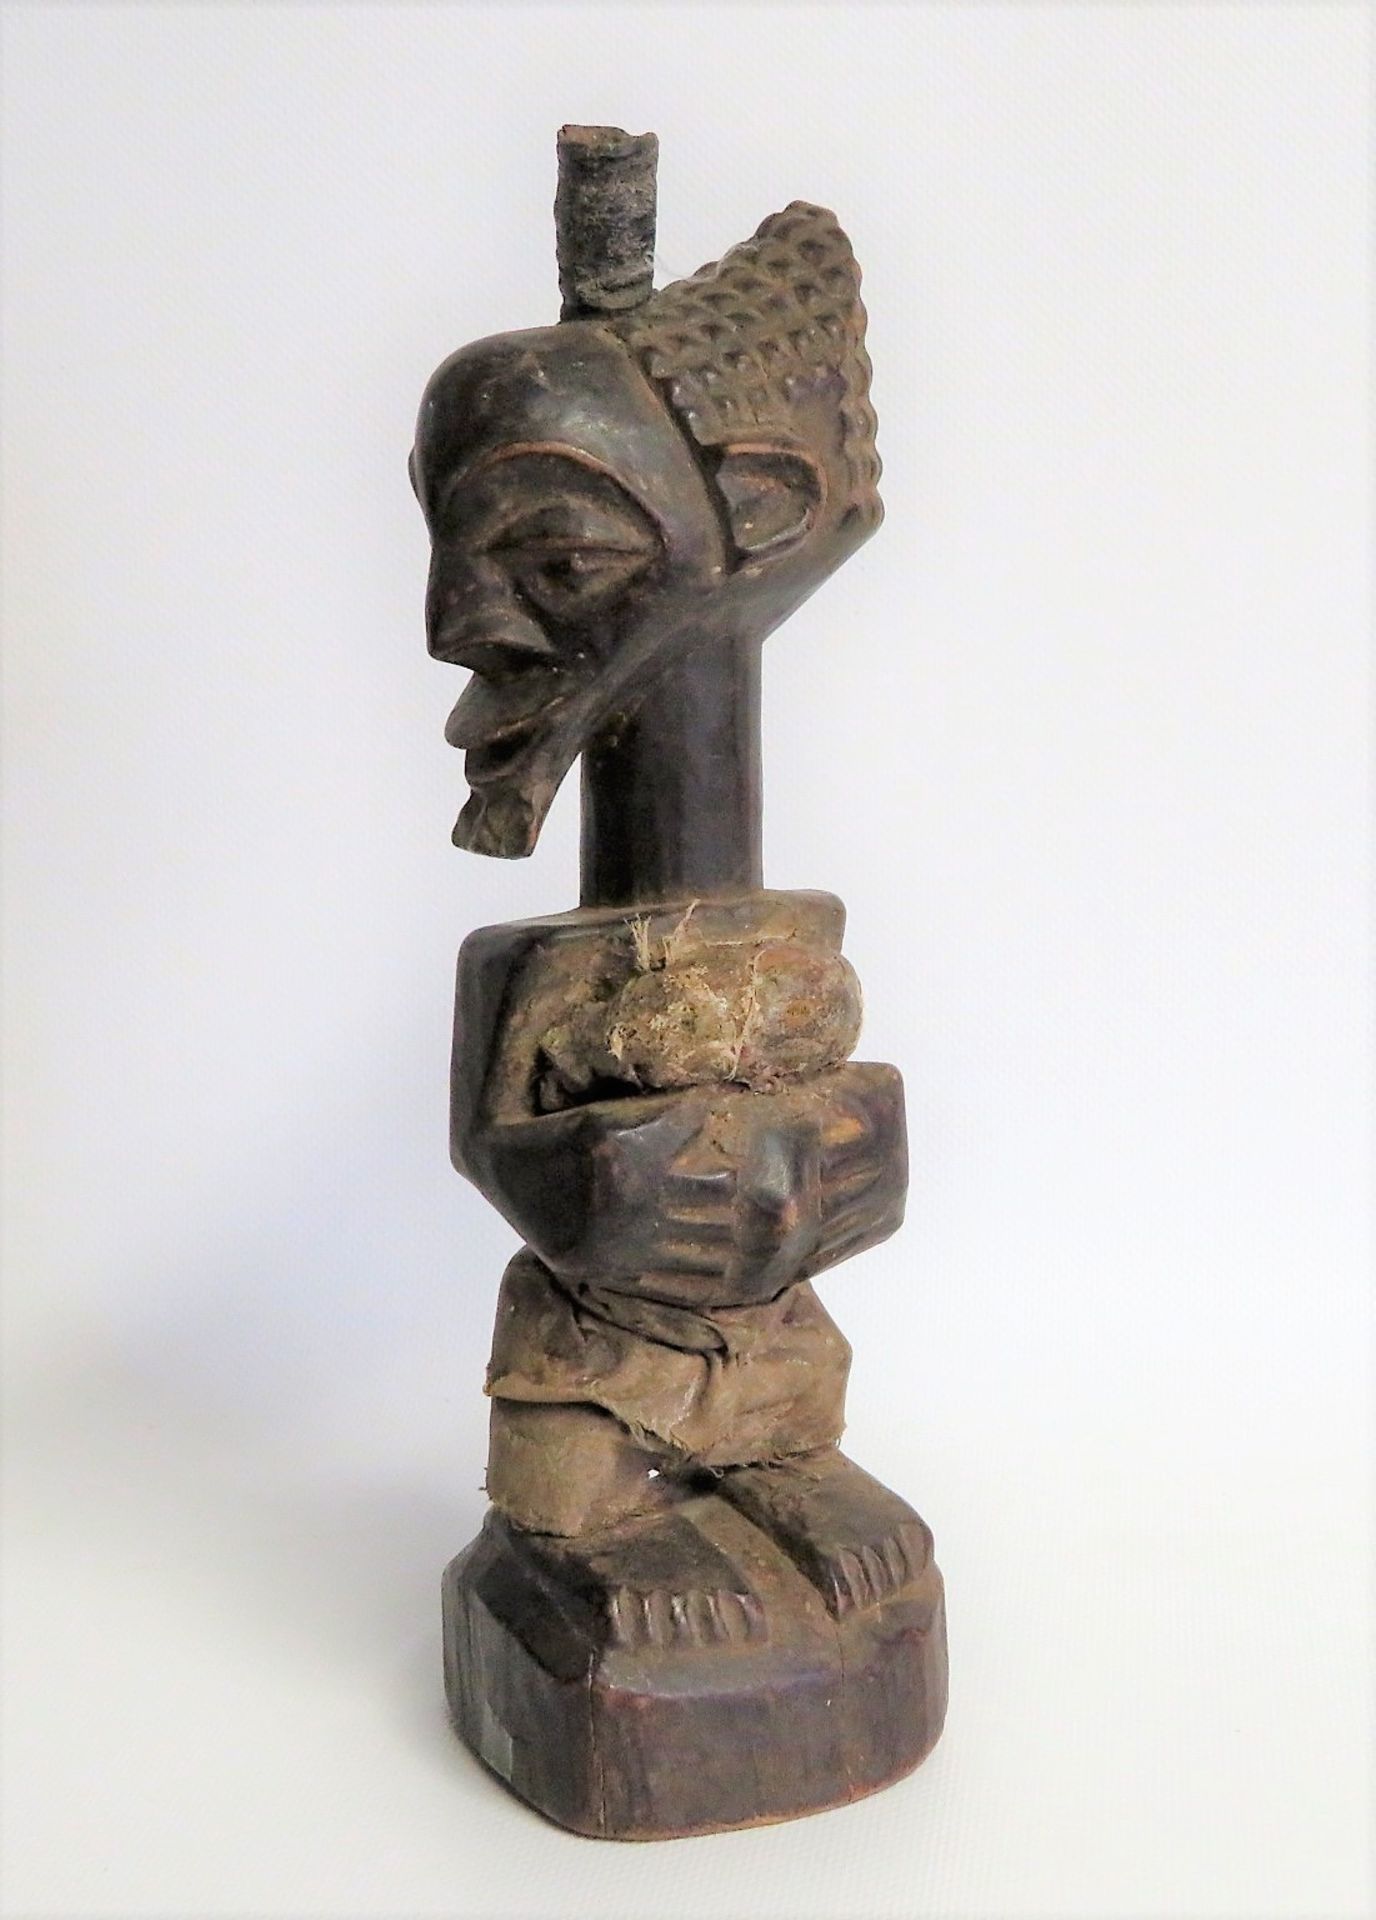 Ahnenfigur, Afrika, Zaire, Luba, Holz geschnitzt, Leinenbekleidung, authentisch, h 26,5 cm, d 7,5